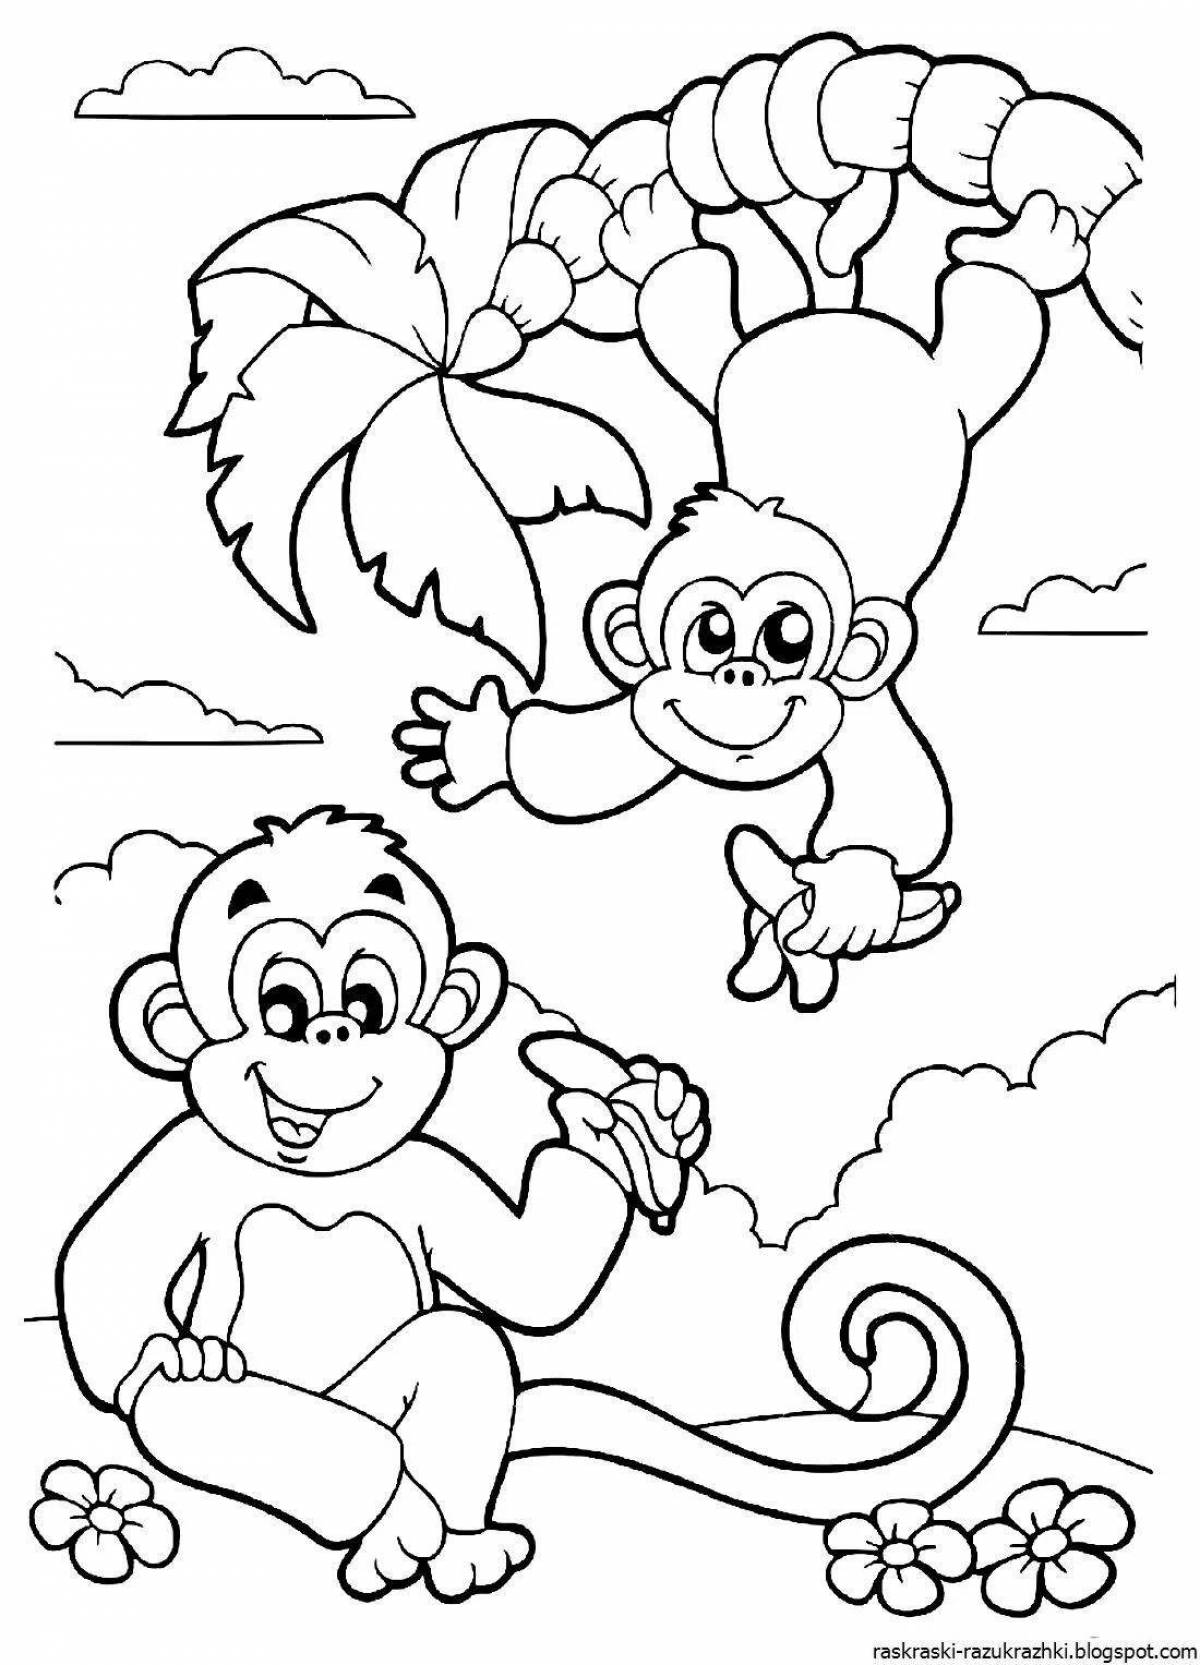 Чудесная раскраска обезьяны для детей